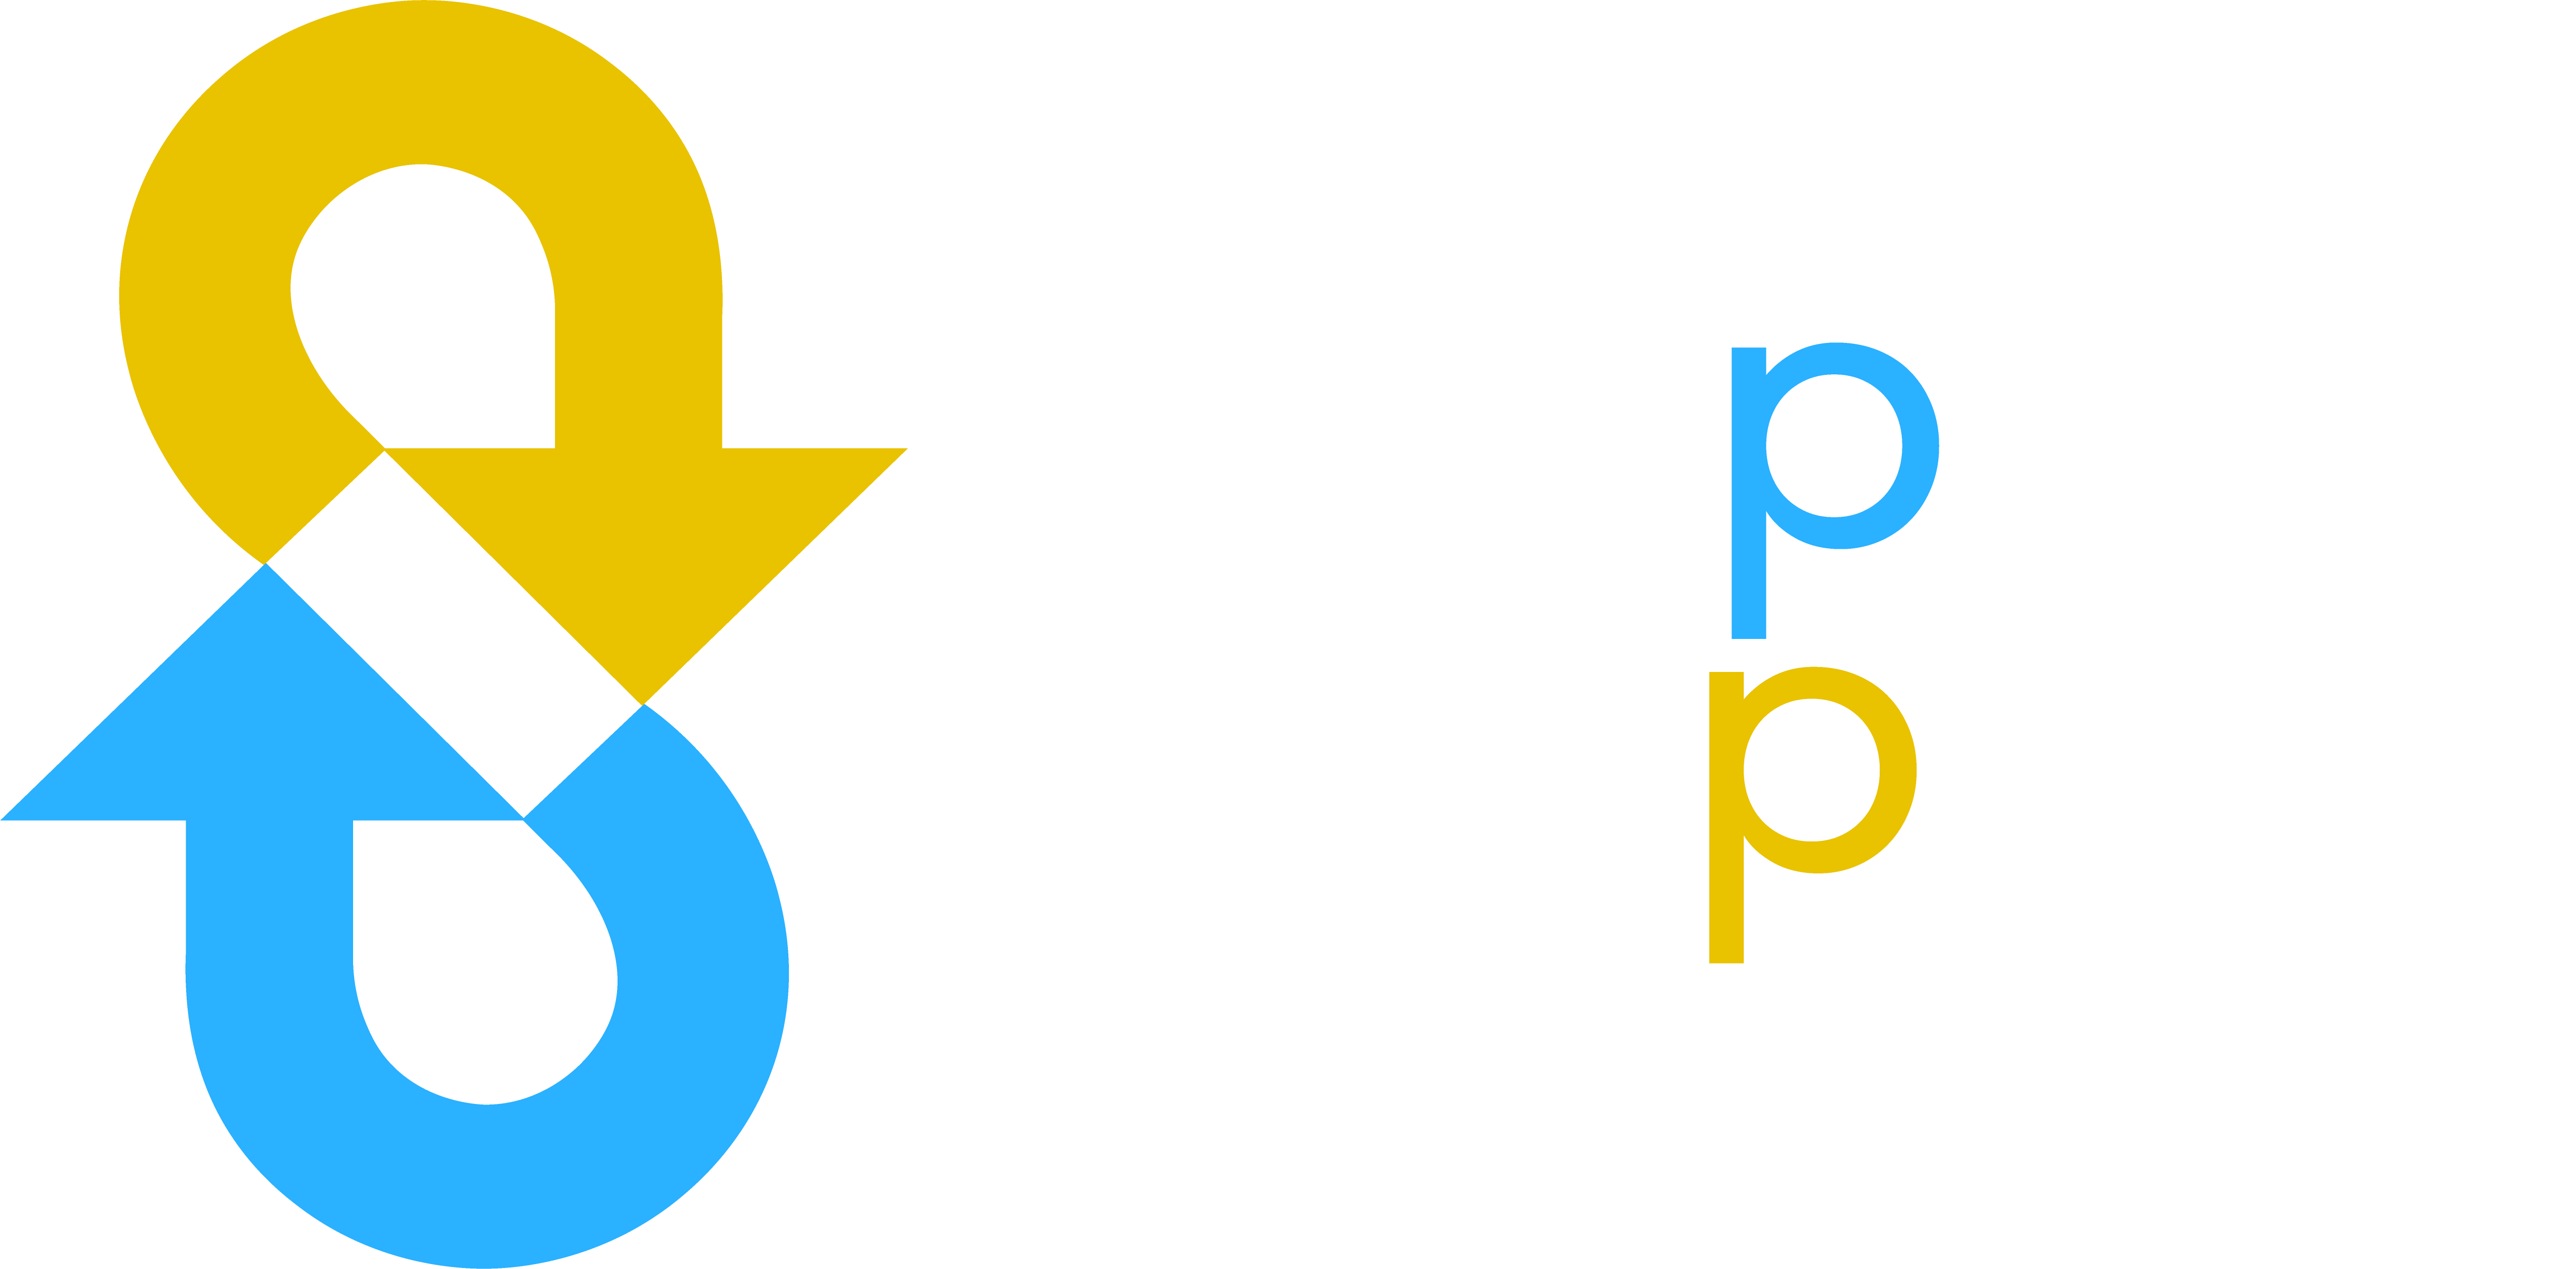 swap.coupons - de plek om uw cadeaubon te kopen met korting